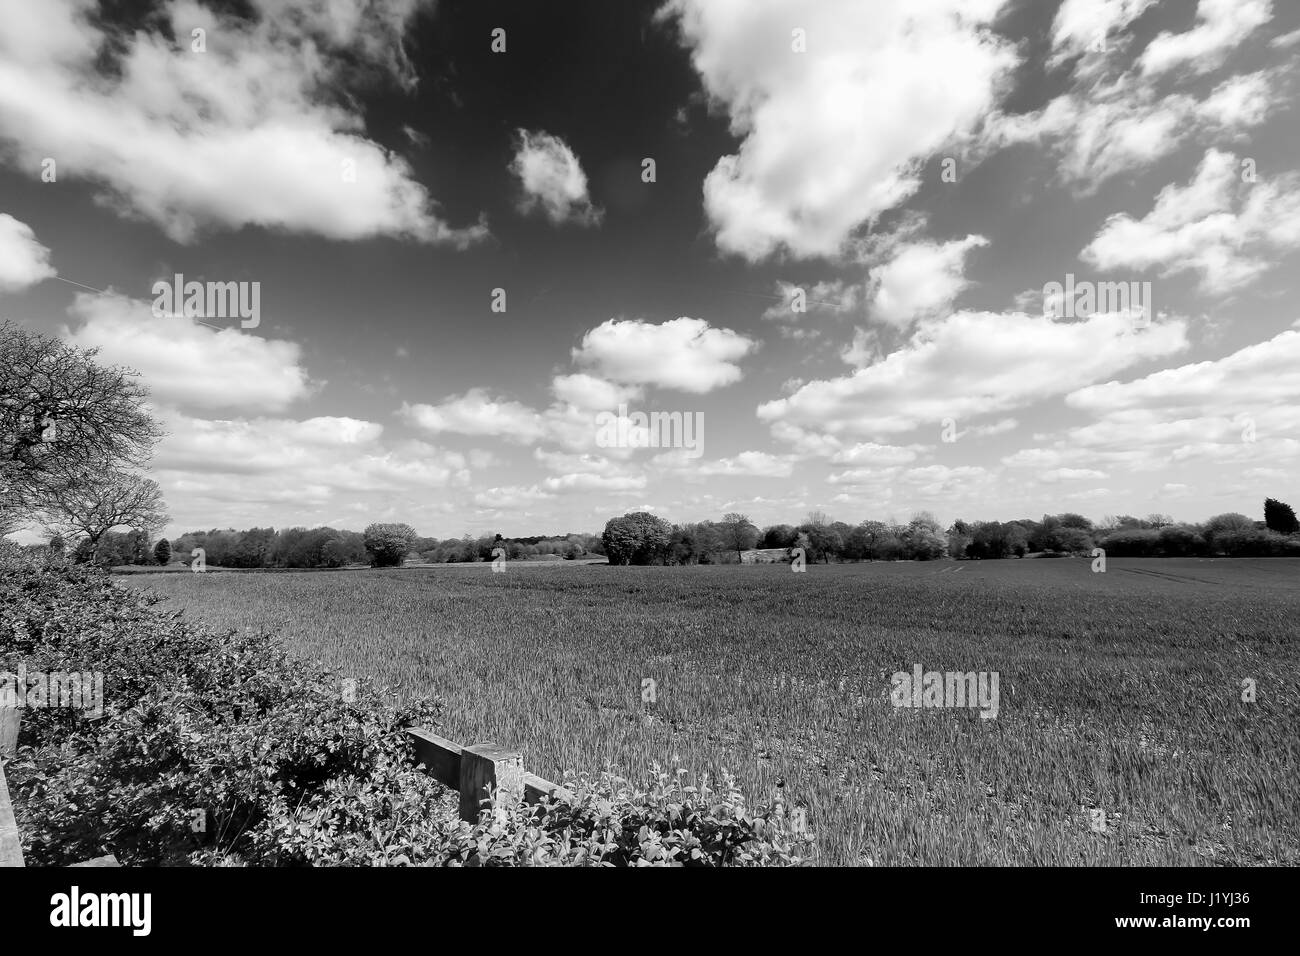 Ashton in Makerfield Landschaften April 2017, zeigen verschiedene open Space, Felder und Himmel an einem sonnigen Tag Stockfoto